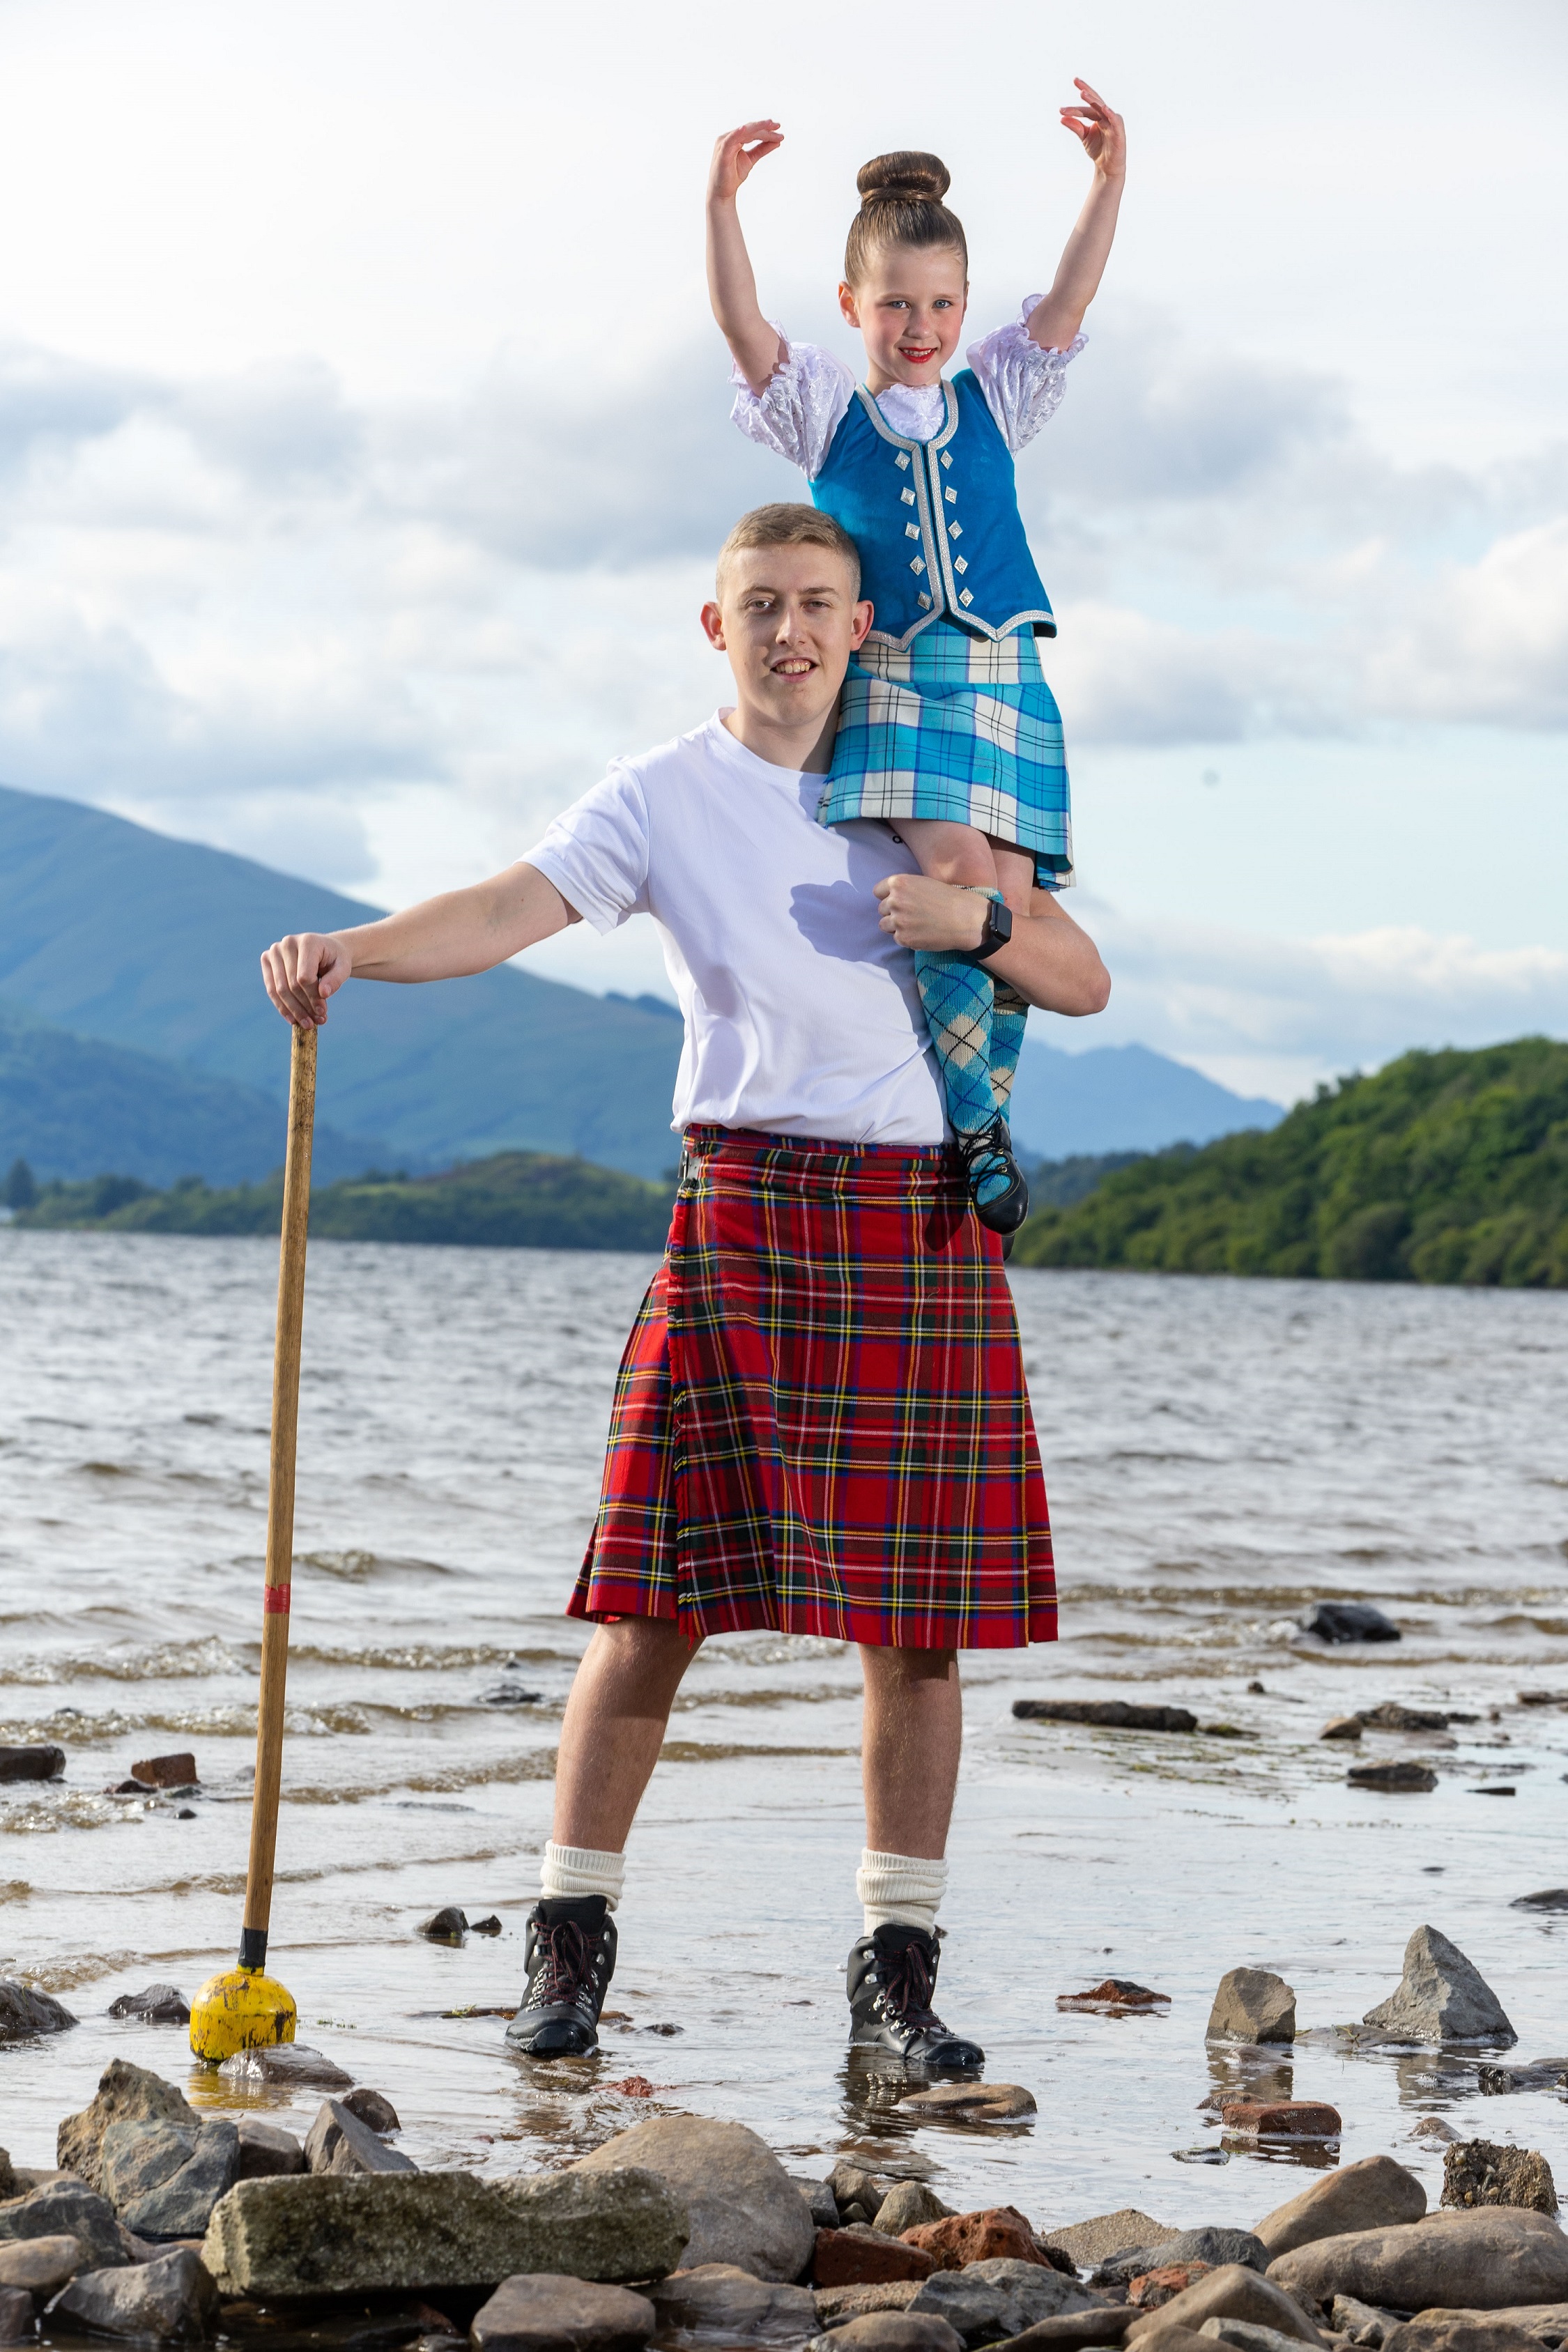 Young highland dancer on man in kilt shoulders at Loch Lomond